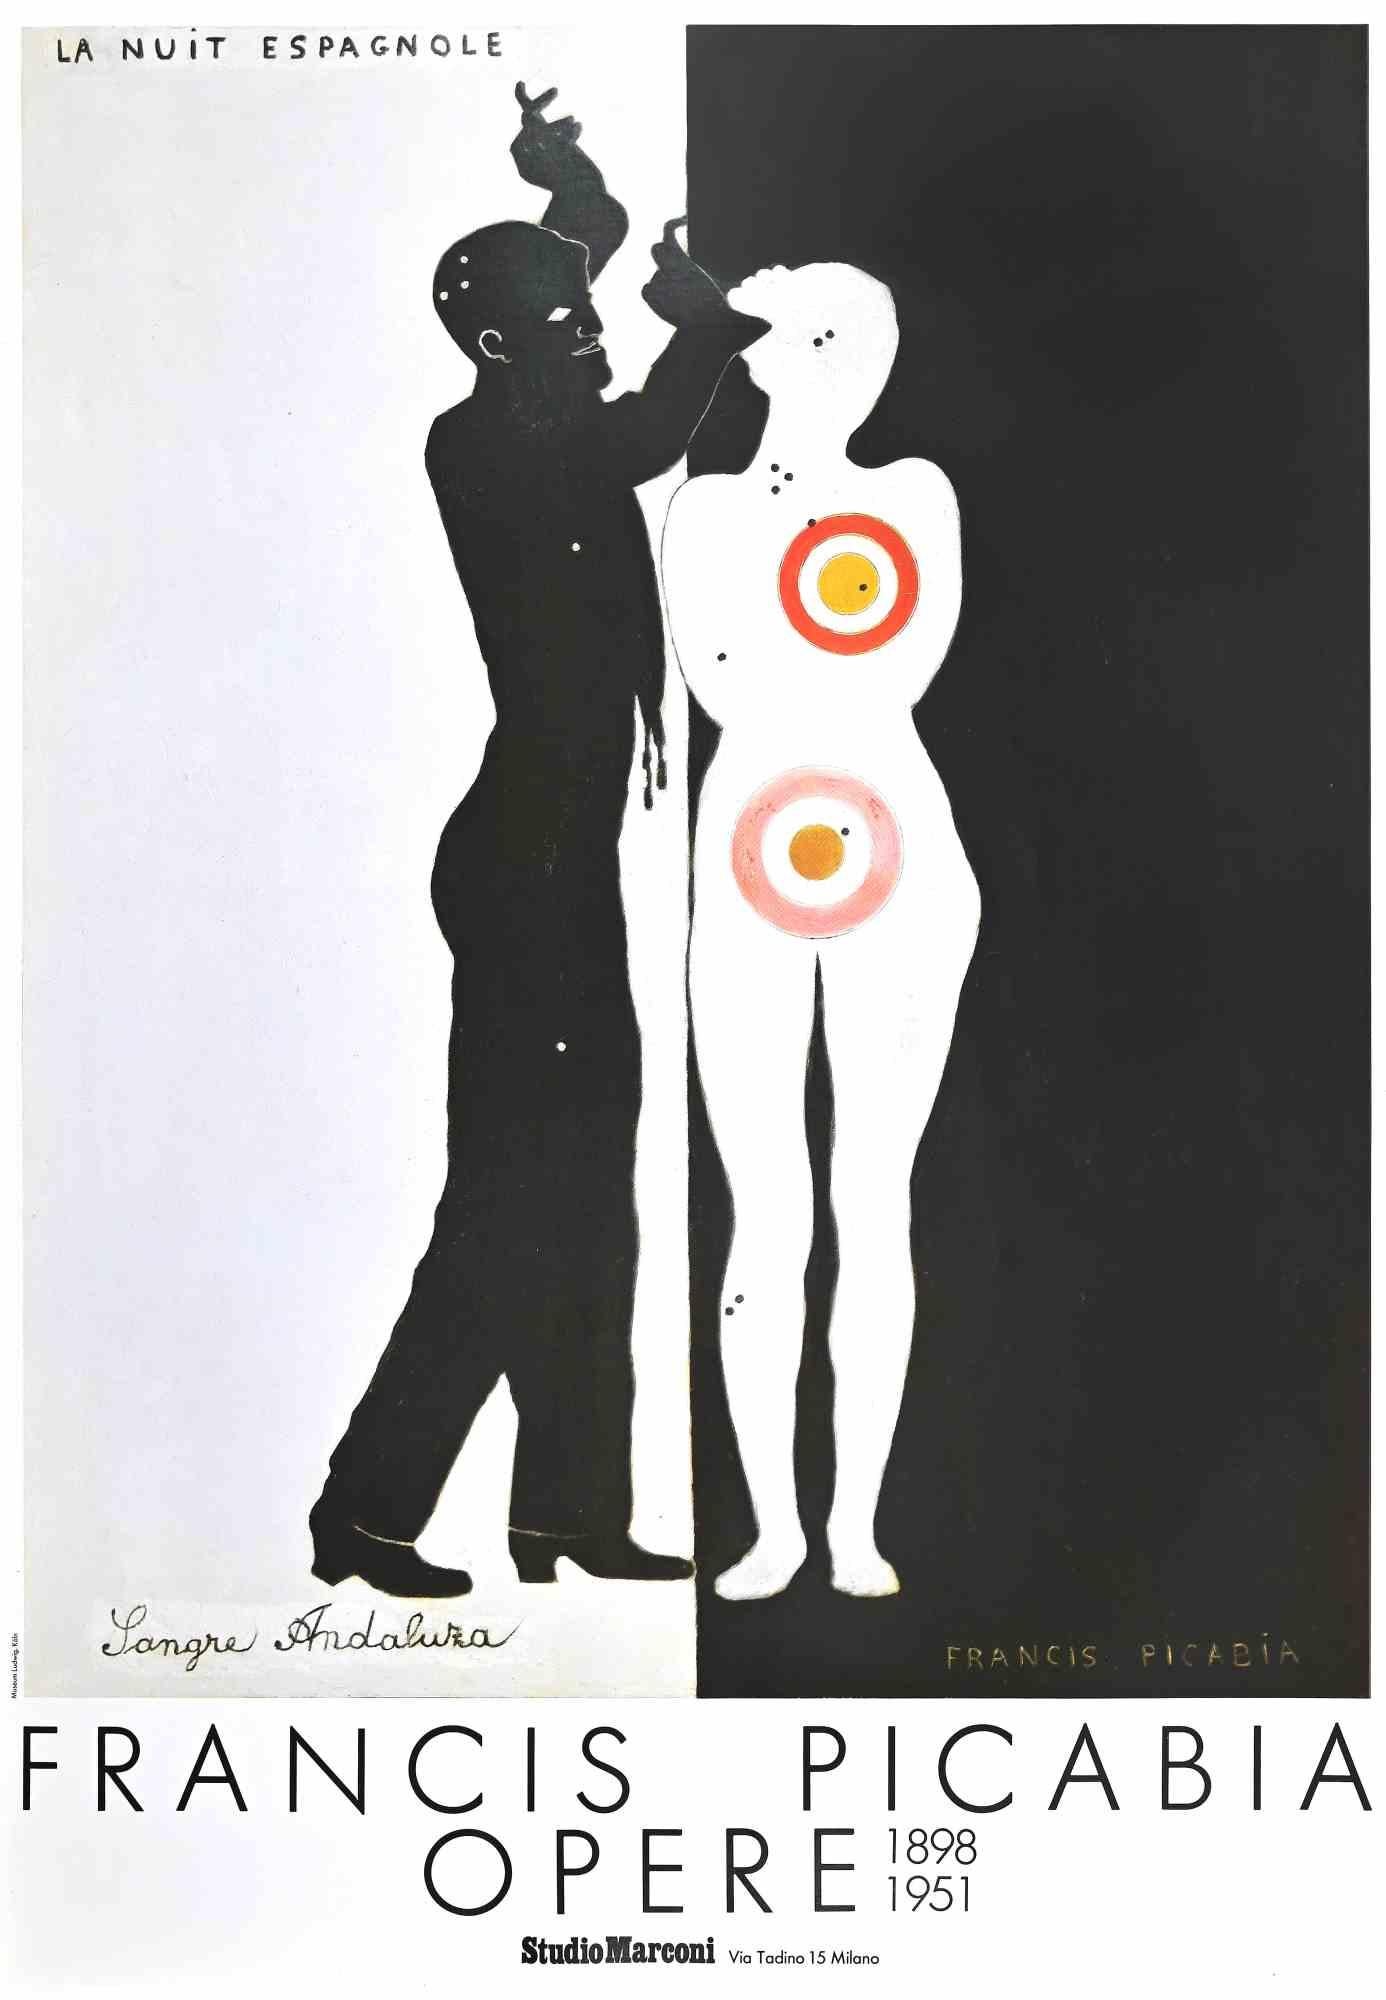 Francis Picabia Figurative Print - Picabia La Nuit Espagnole - Poster Exhibition - Vintage Offset Print - 1986